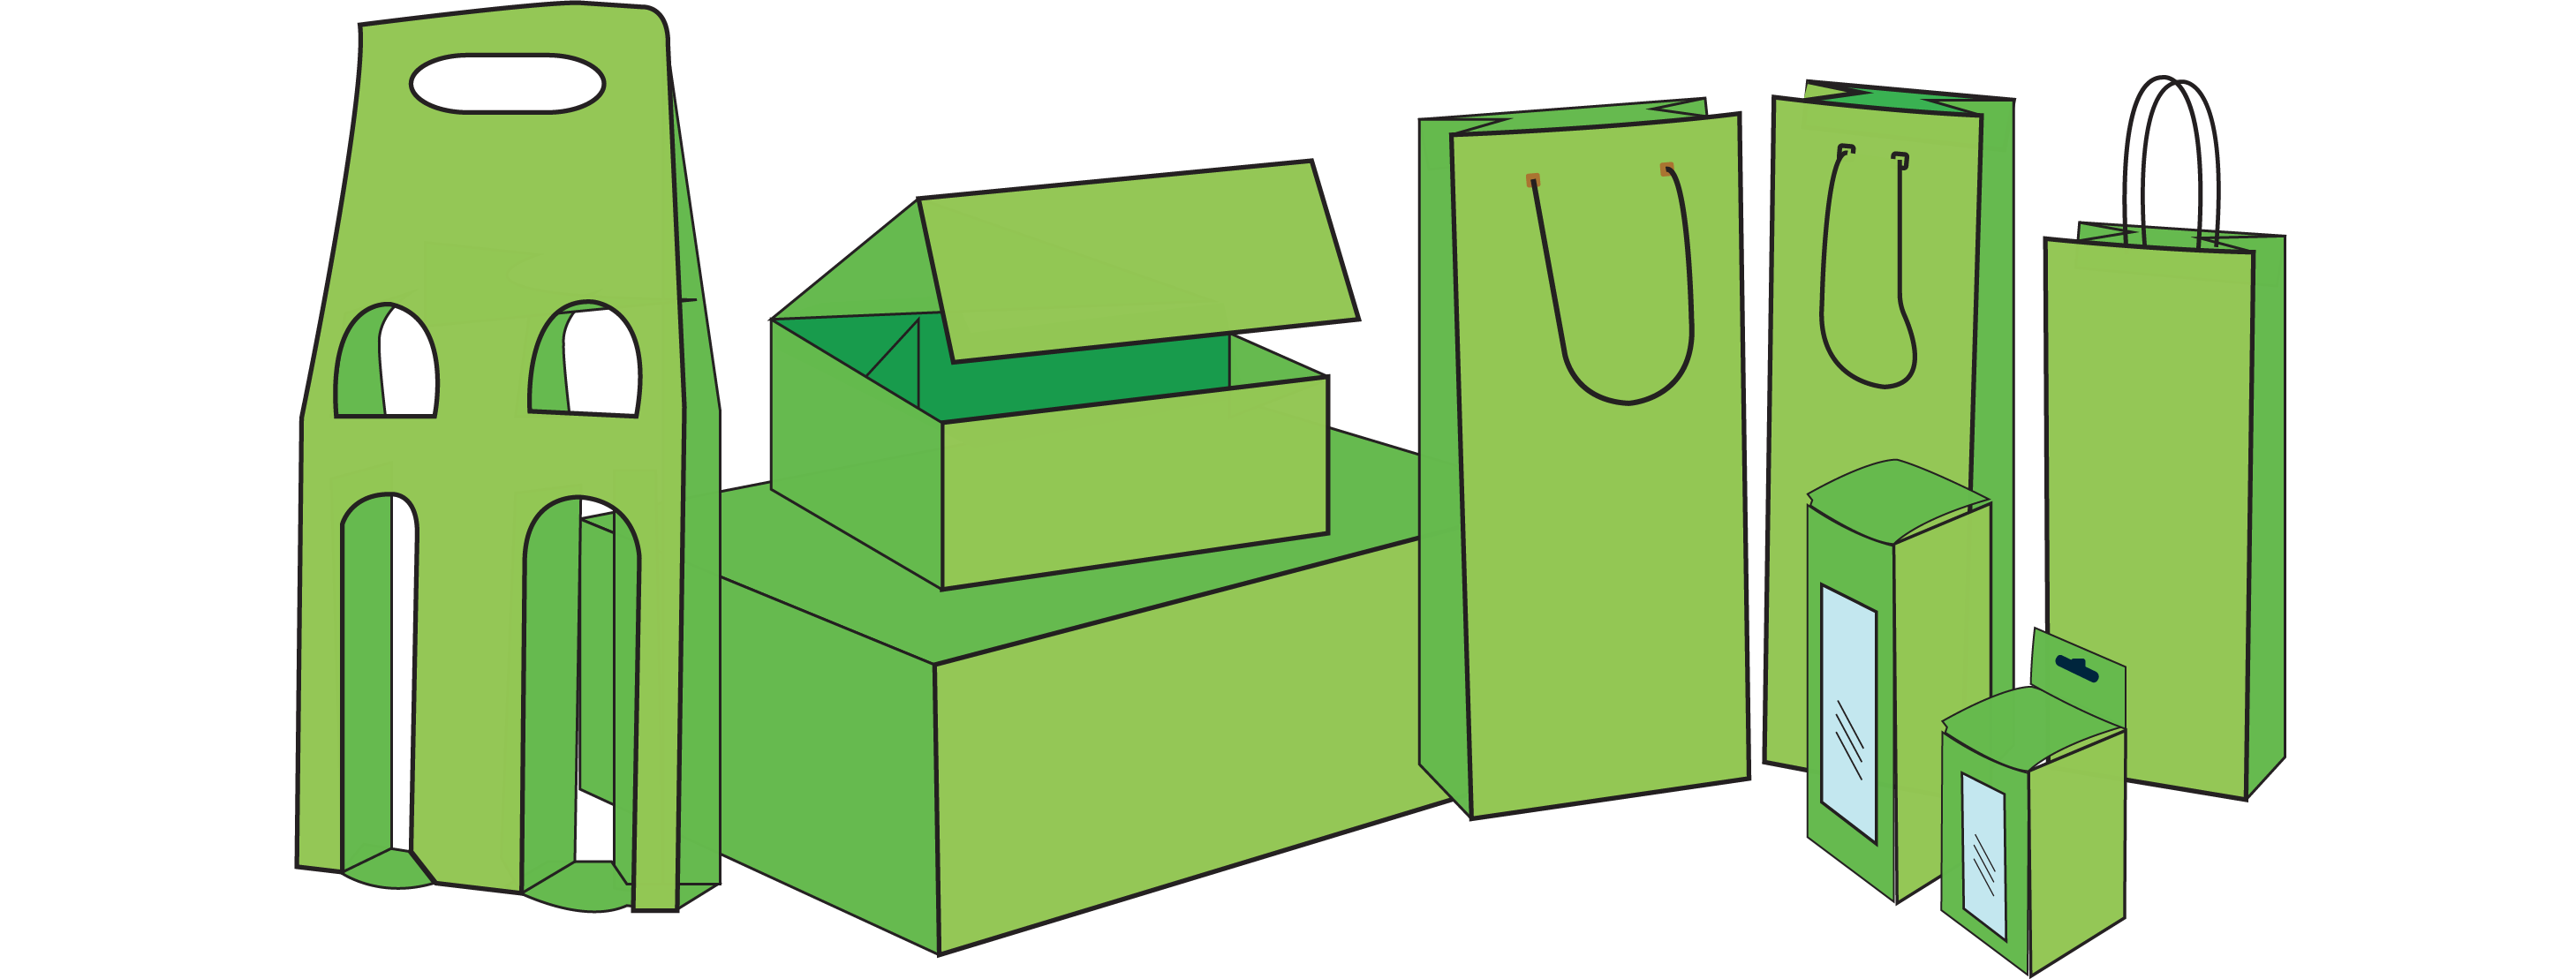 Composizione digitale raffigurante vari packaging dal colore verde acceso. Sono presenti ad esempio: una shopper, un porta bottiglie doppio e delle scatole